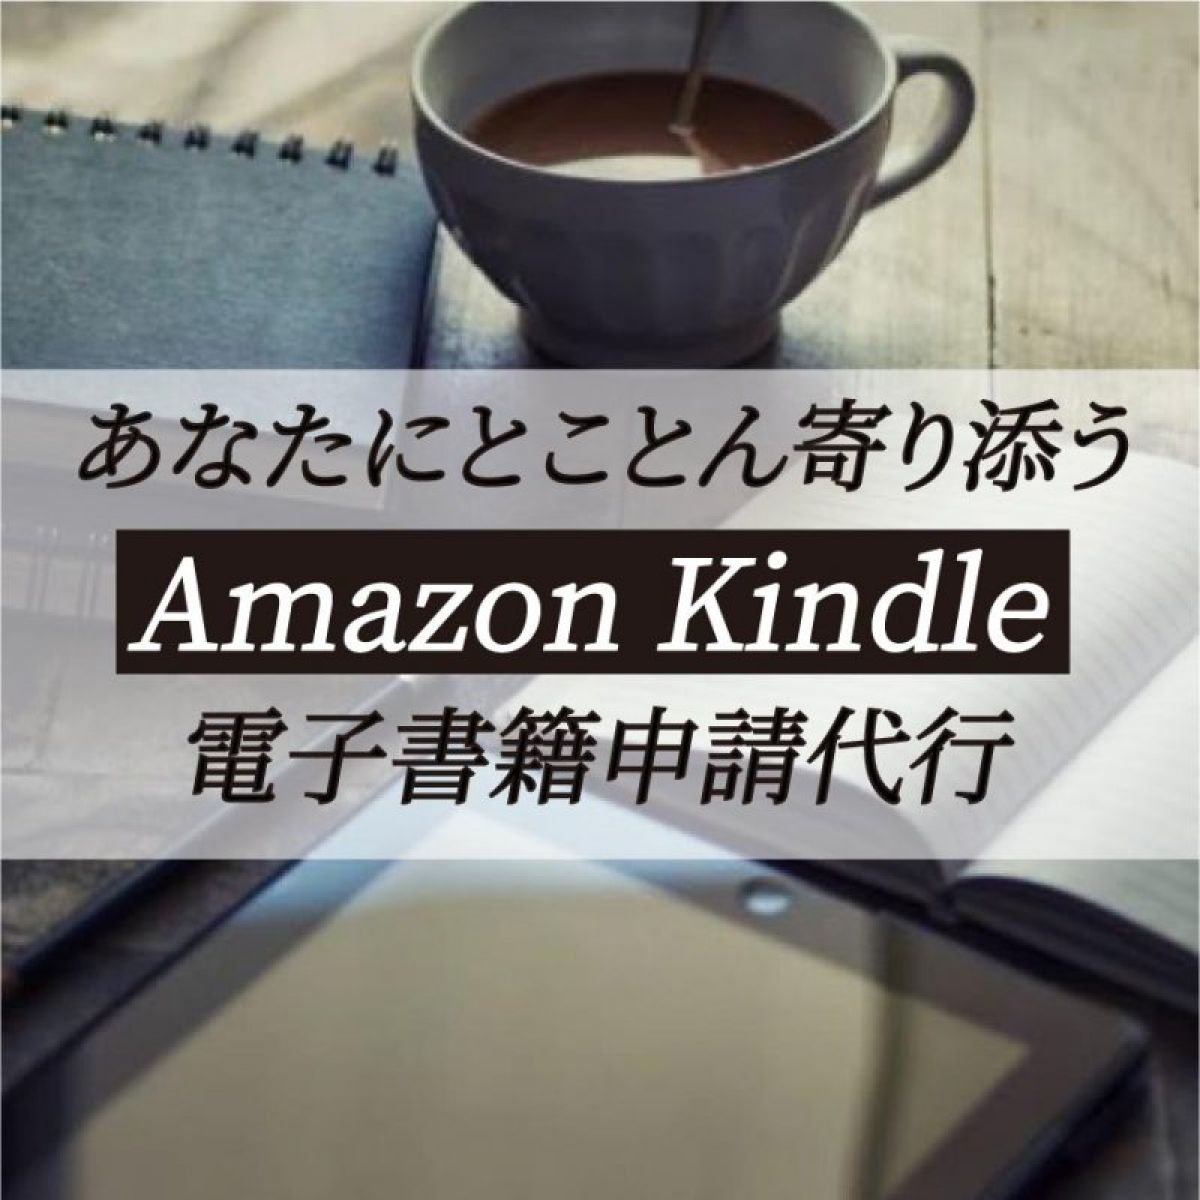 あなたにとことん寄り添う Amazon Kindle 電子書籍申請代行（データ化、申請、アップあり）